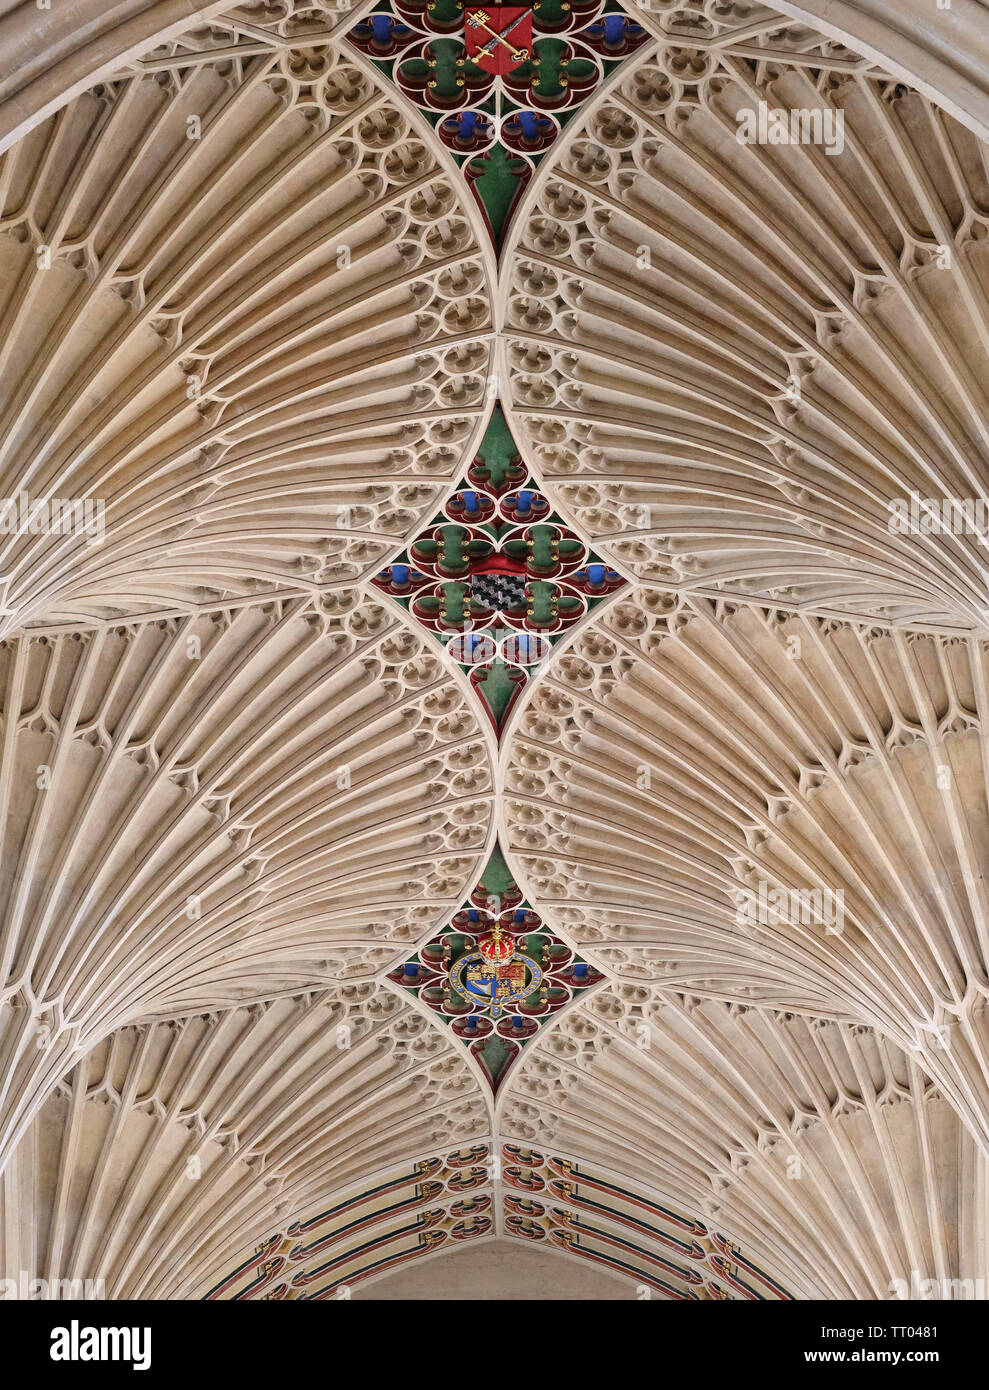 Die Abtei von Bath, Decke detail. Bath, England, UK. Stockfoto